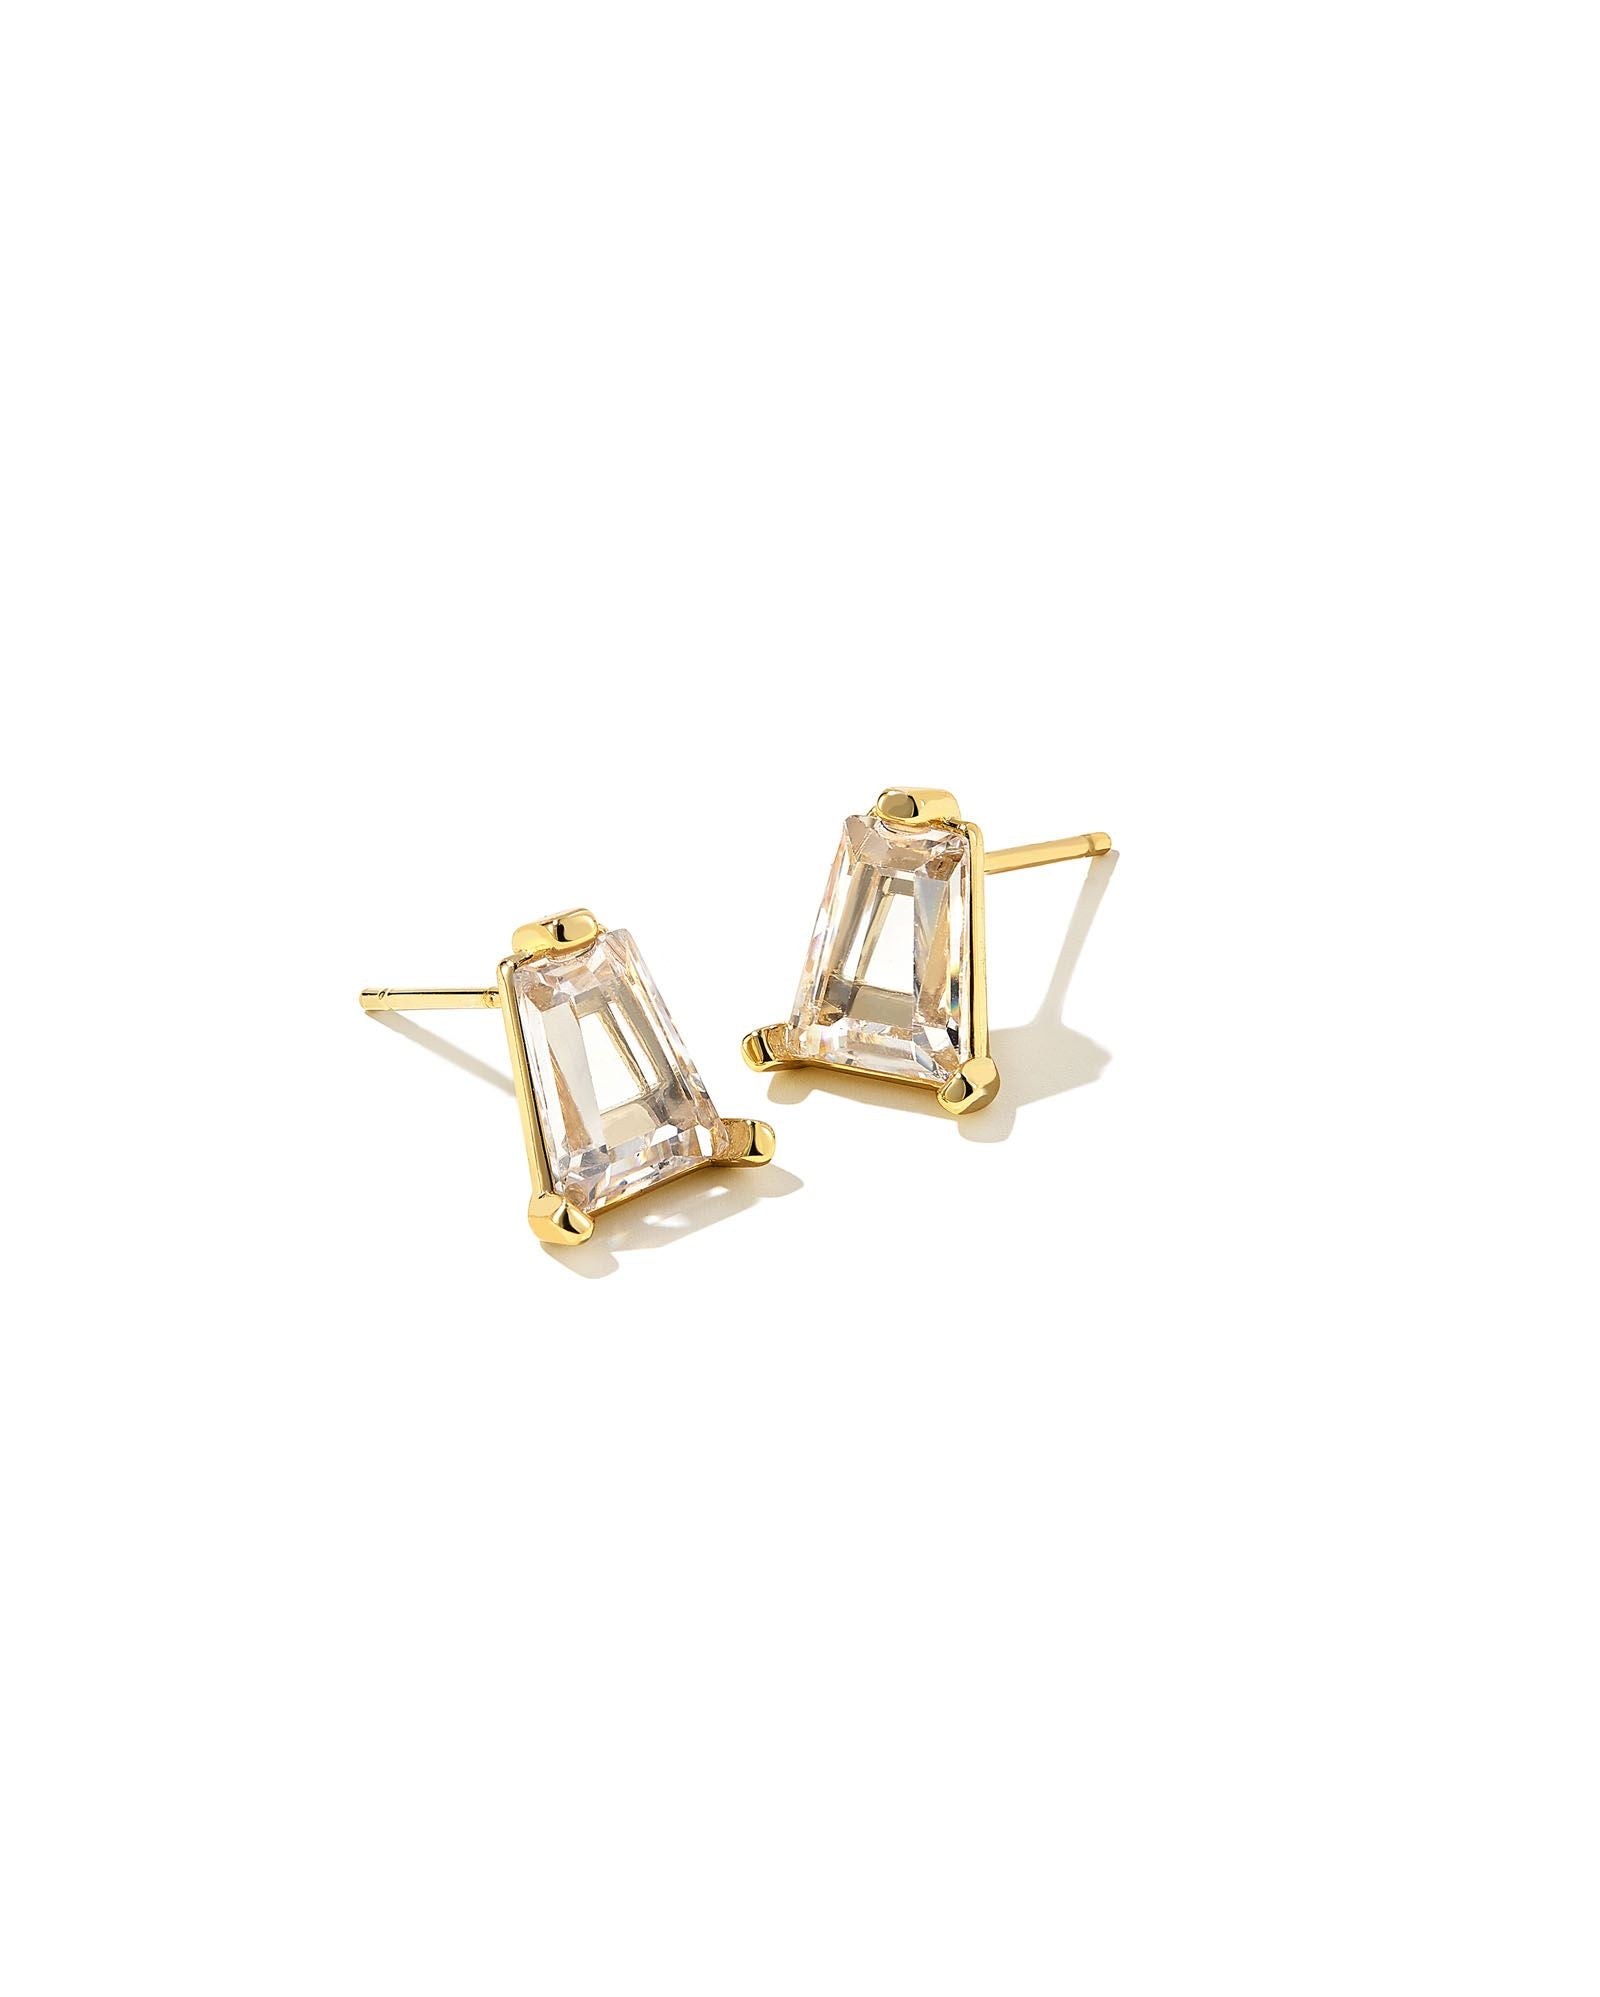 Blair Stud Earrings in Gold White Crystal